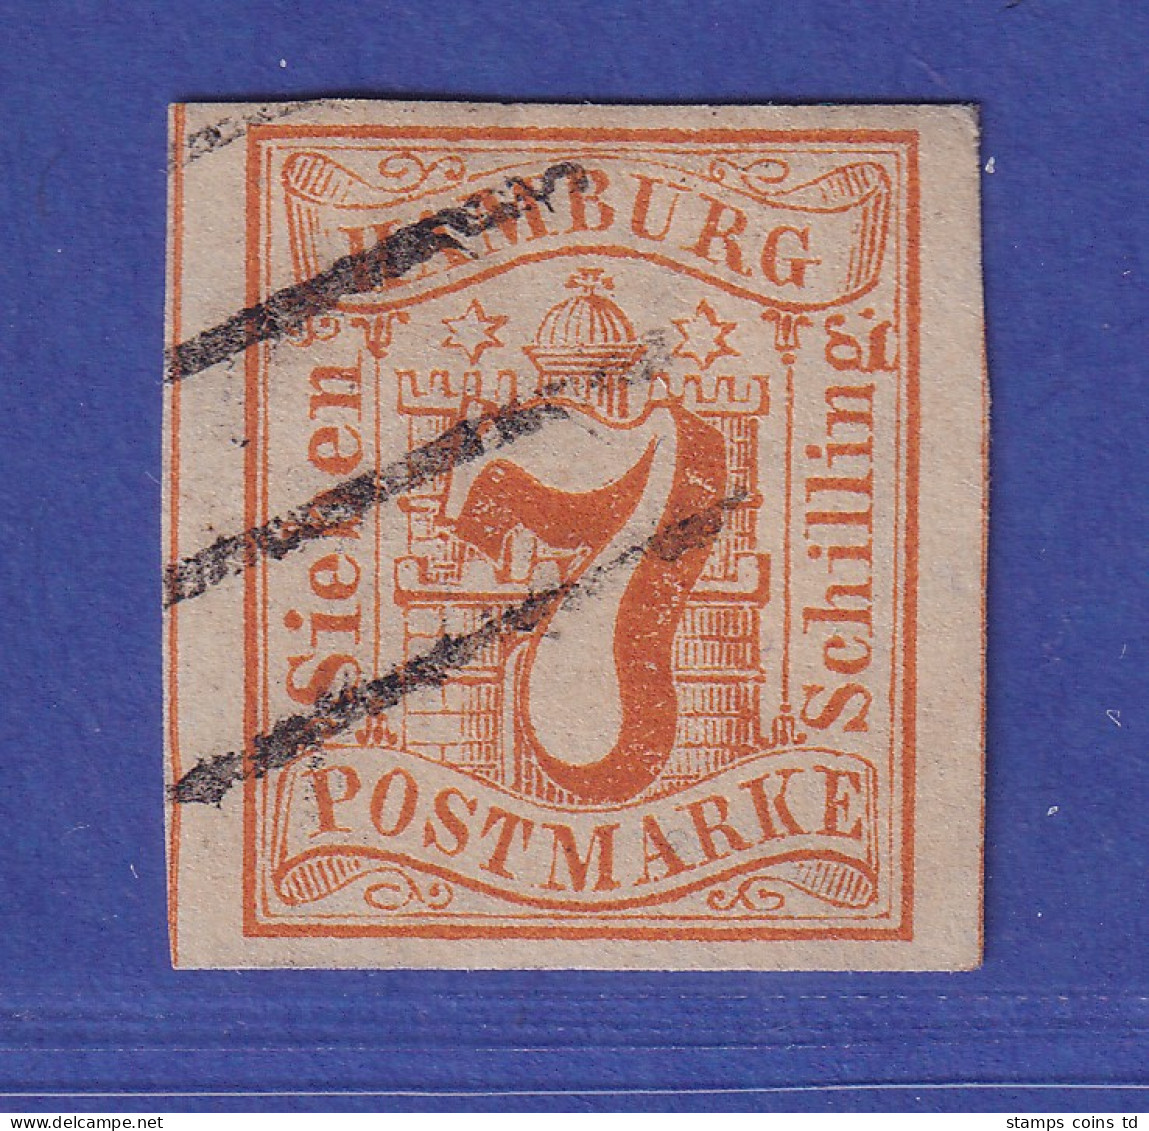 Hamburg 1859 Wertziffer 7 Schillinge Orange Mi.-Nr. 6 Gestempelt Gpr. PFENNINGER - Hamburg